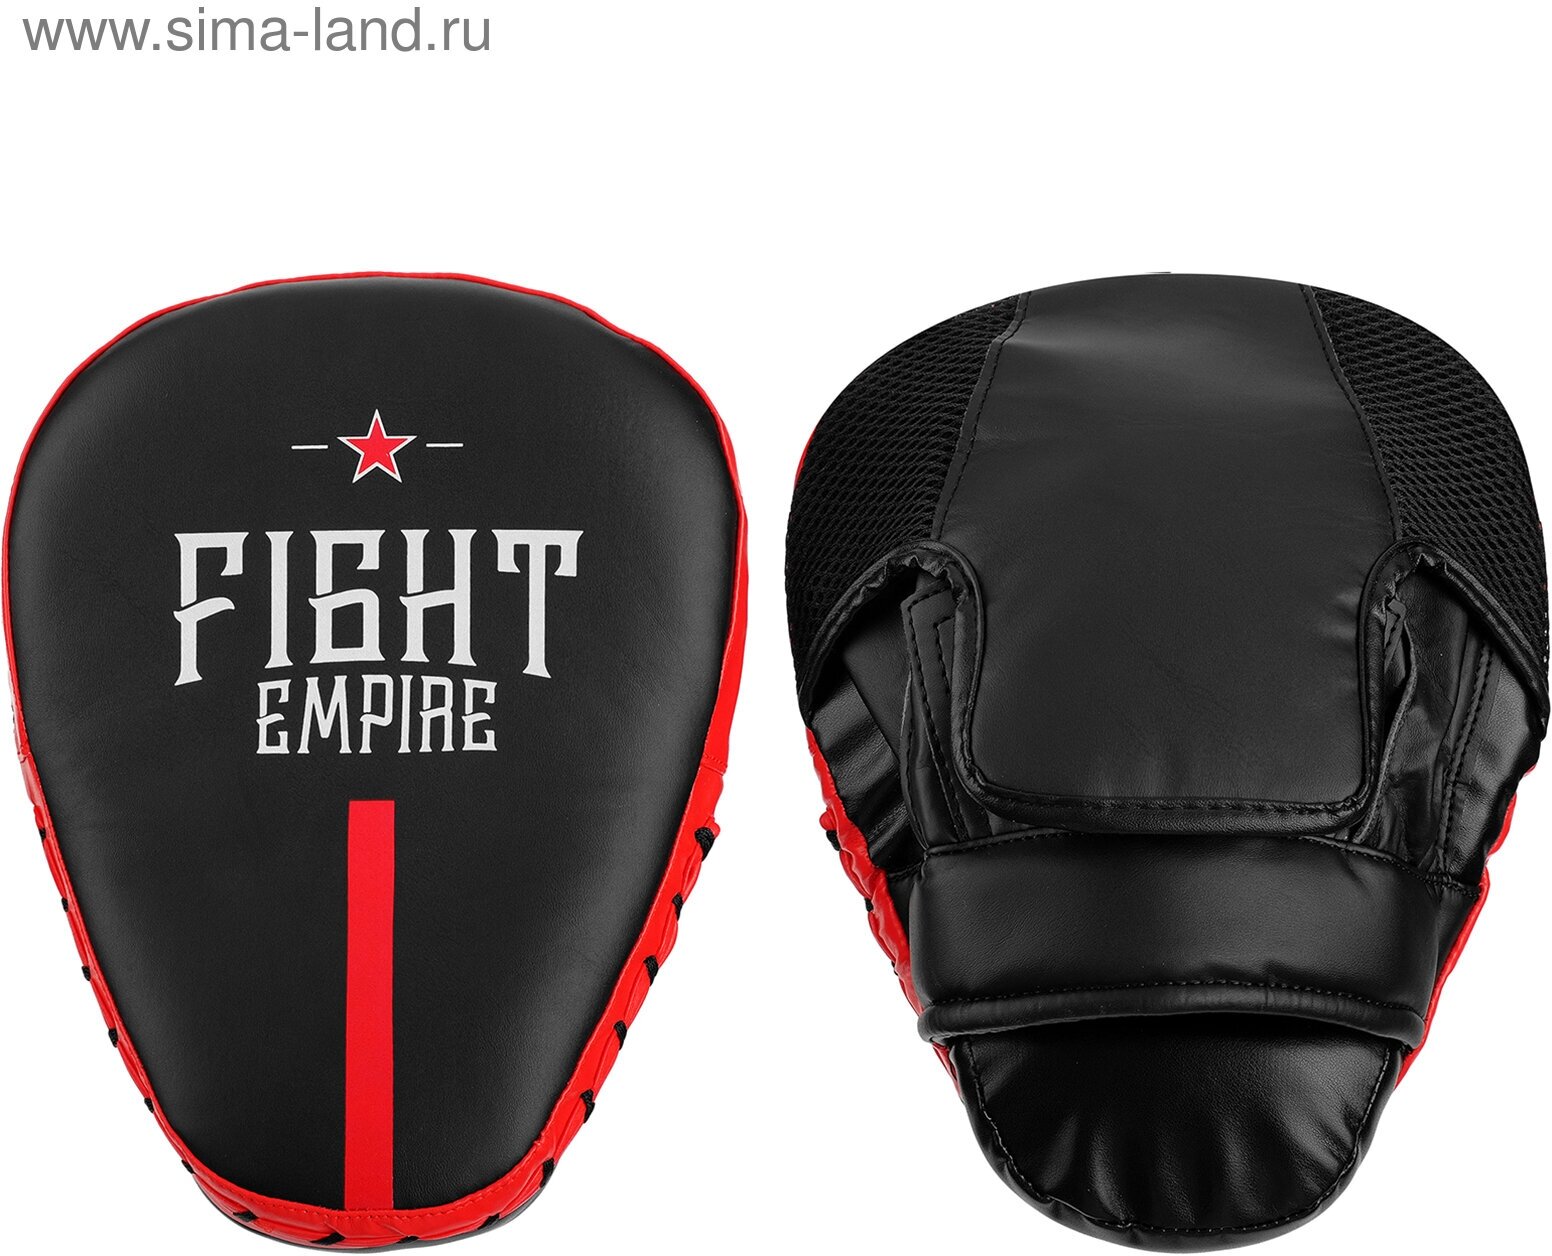 Лапа боксёрская FIGHT EMPIRE PRO, 1 шт, цвет чёрный/красный